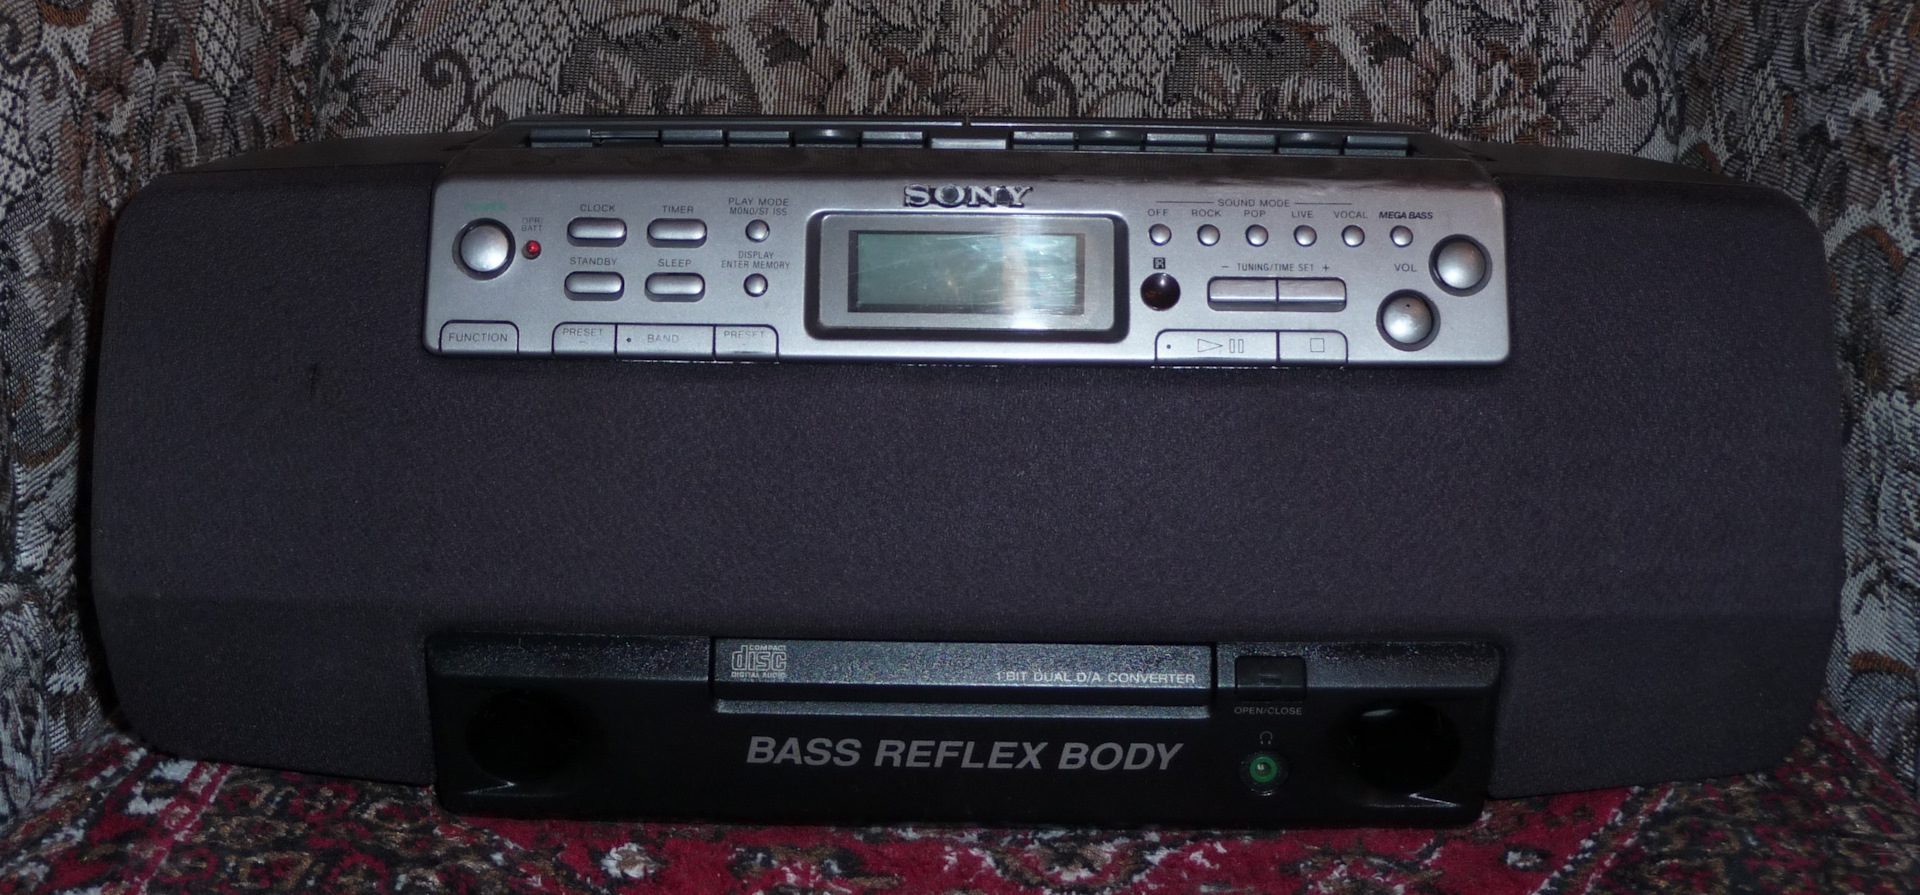 Ruff style feat bass reflex martik. Sony CFS-w501. Магнитофон Sony CFS-715s. Sony Bass Reflex body. Магнитофон сони басс 2013г.